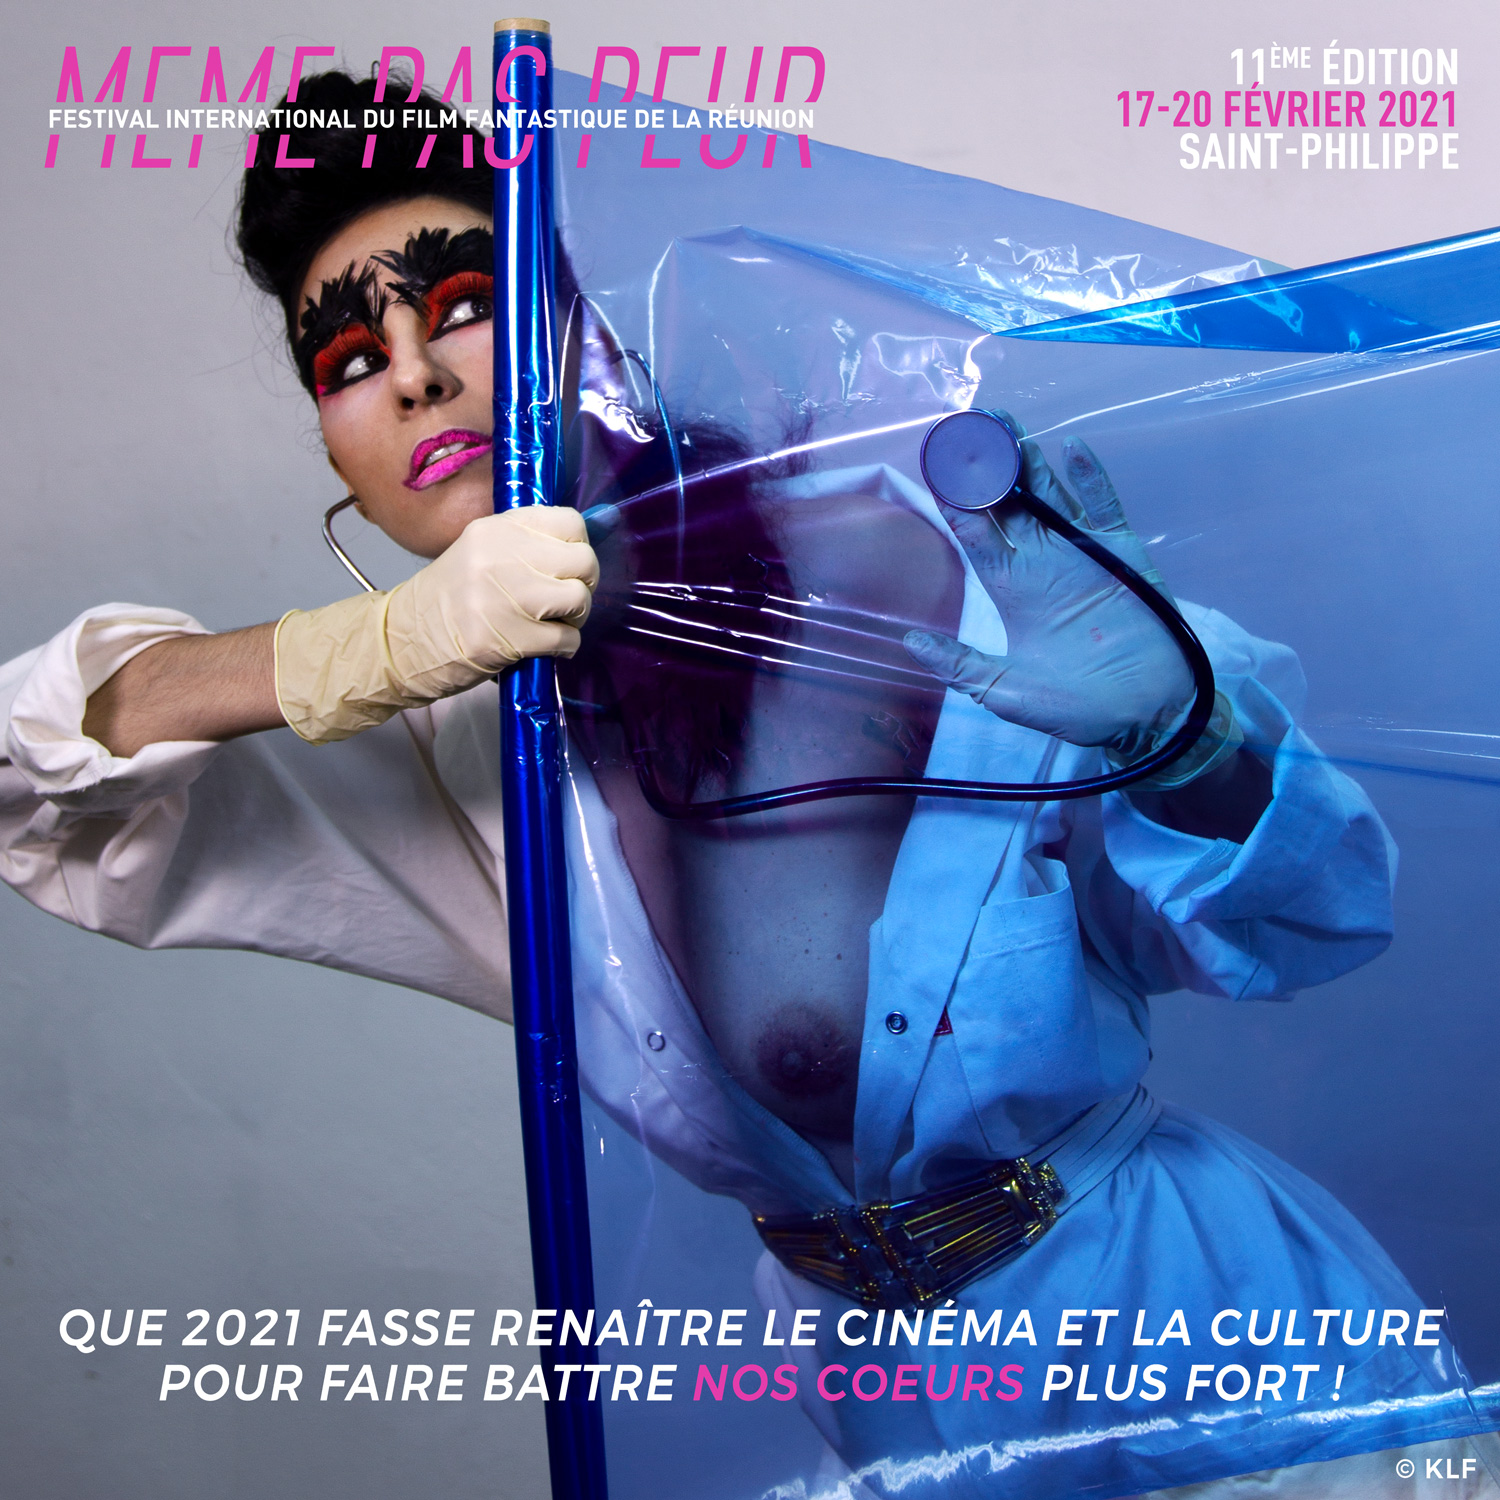 Le cri du coeur d'Aurélia: "Que 2021 fasse renaître le cinéma et la culture!"